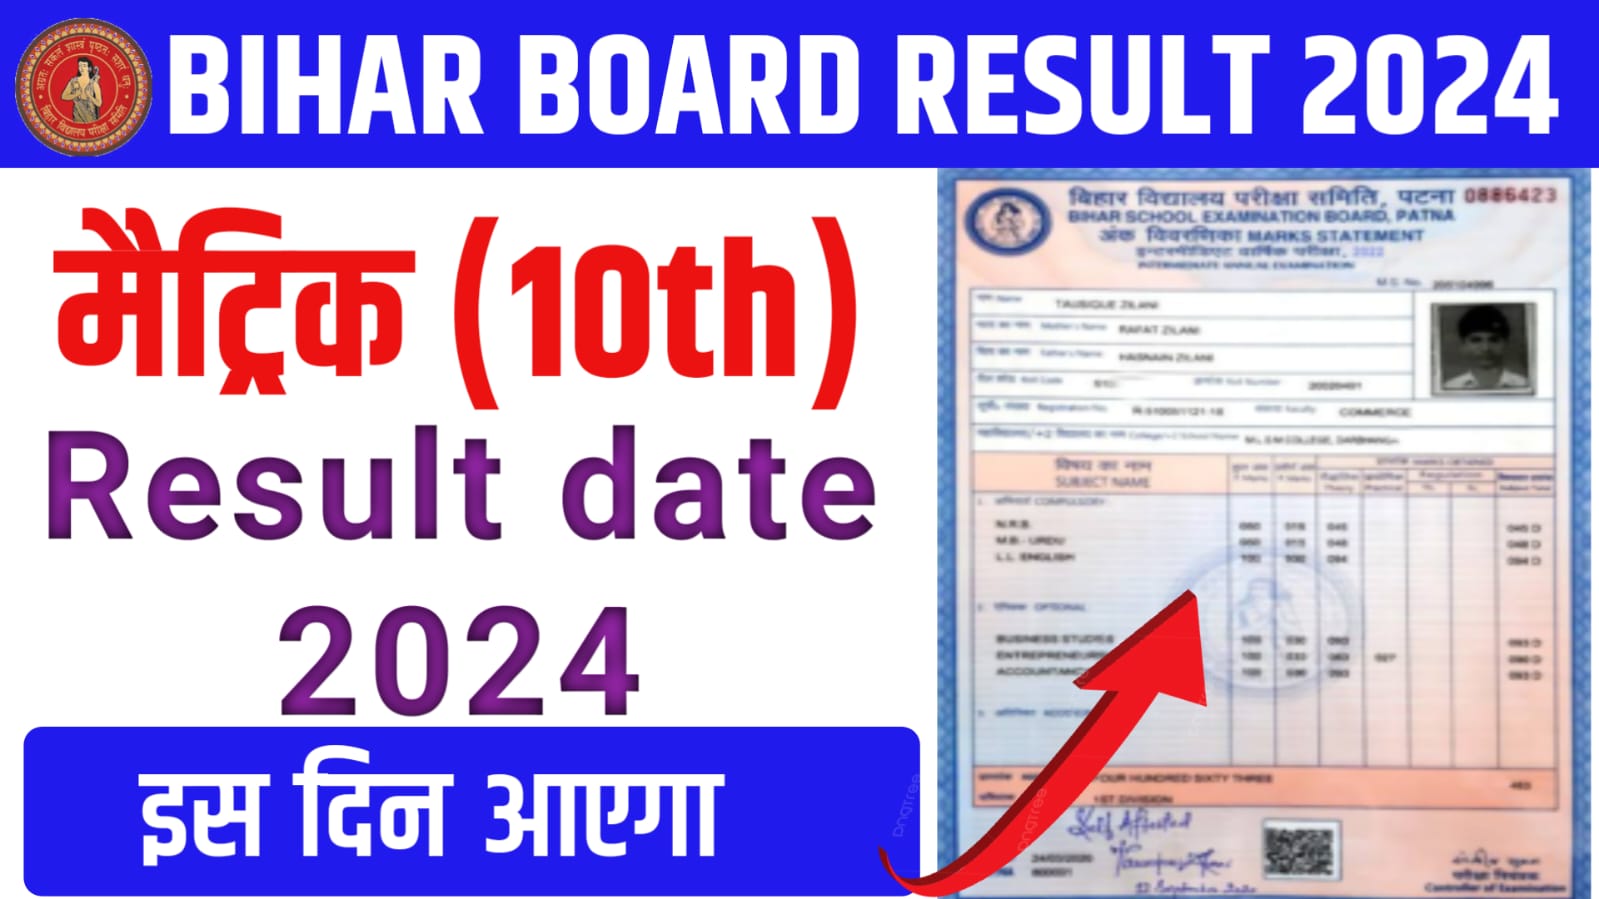 Bihar Board Class 10th Result Date 2024 बिहार बोर्ड मैट्रिक रिजल्ट इस